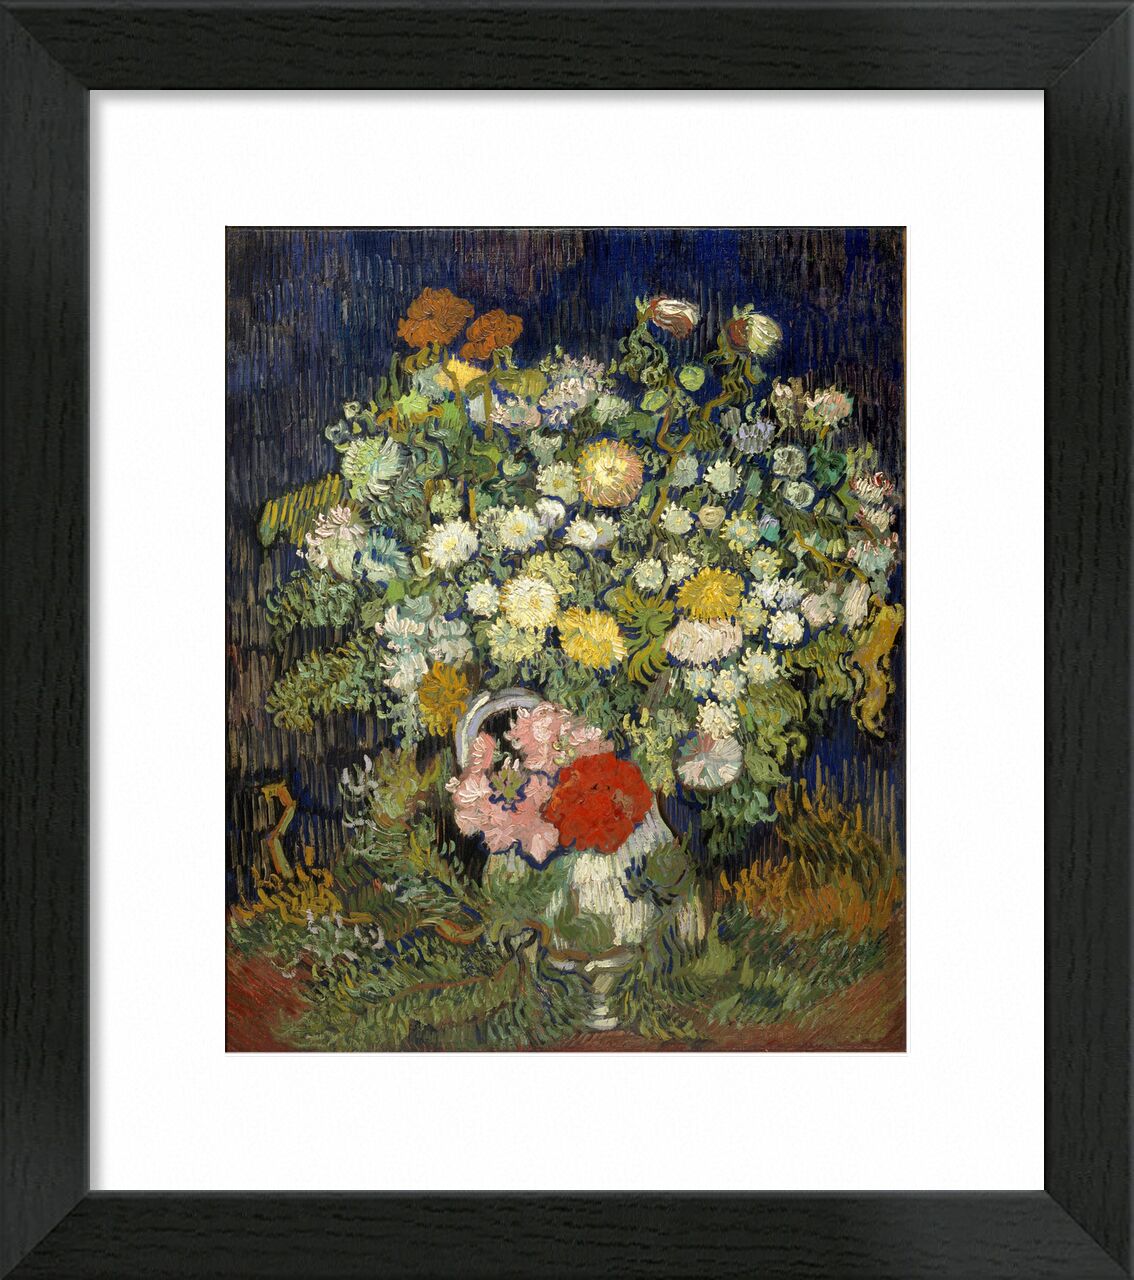 Bouquet of flowers in a vase von Bildende Kunst, Prodi Art, Farben, Verdures, Blumenstrauß in einer Vase, Van gogh, Blumen, Vase